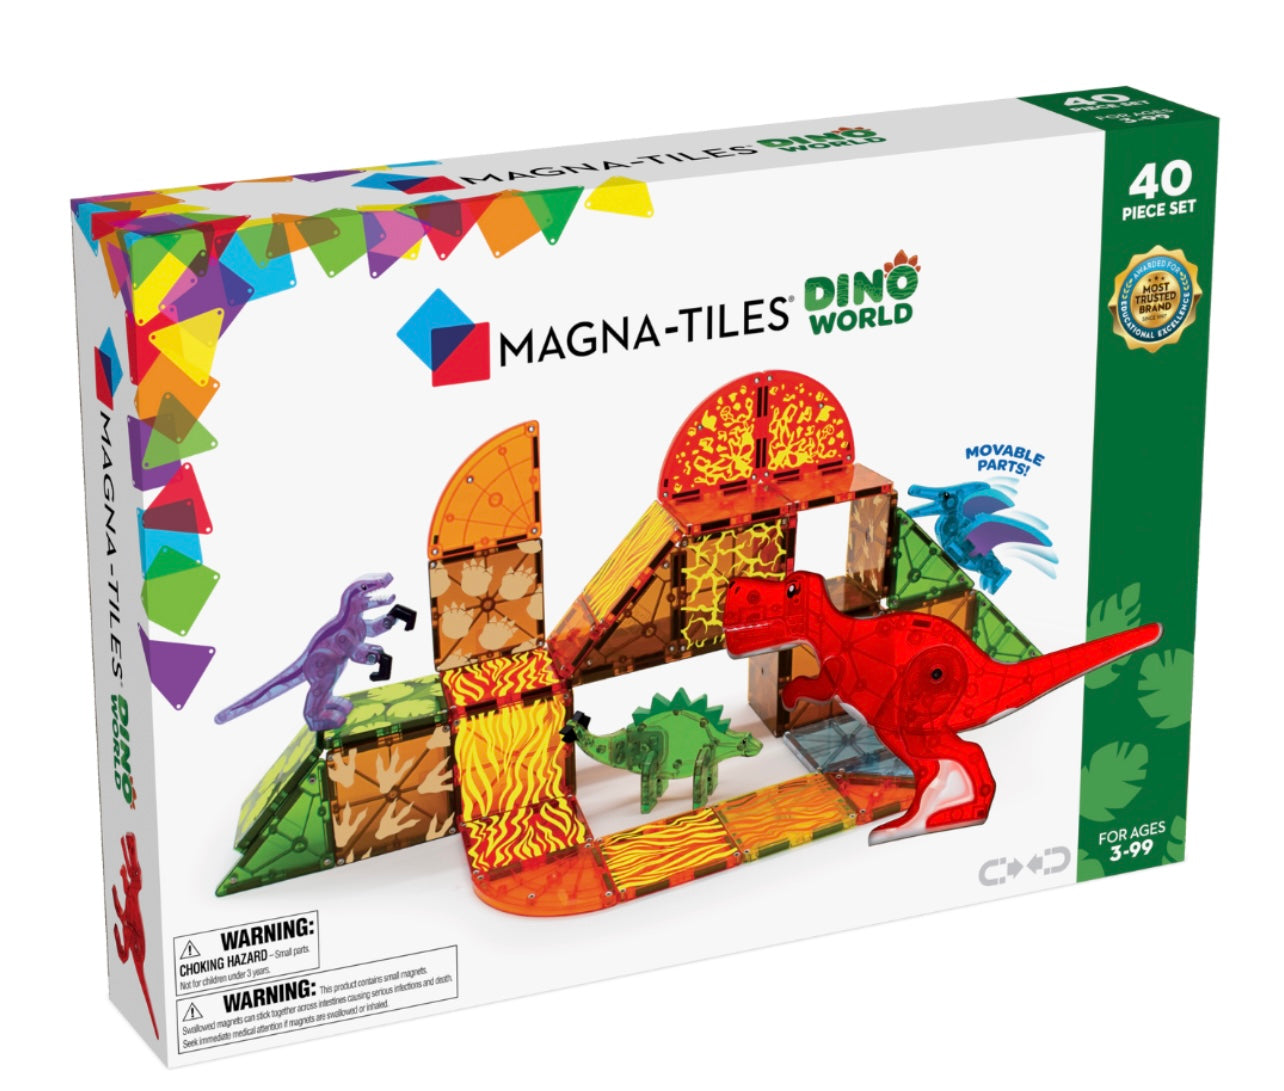 Magna-tiles Dino World 40 piece